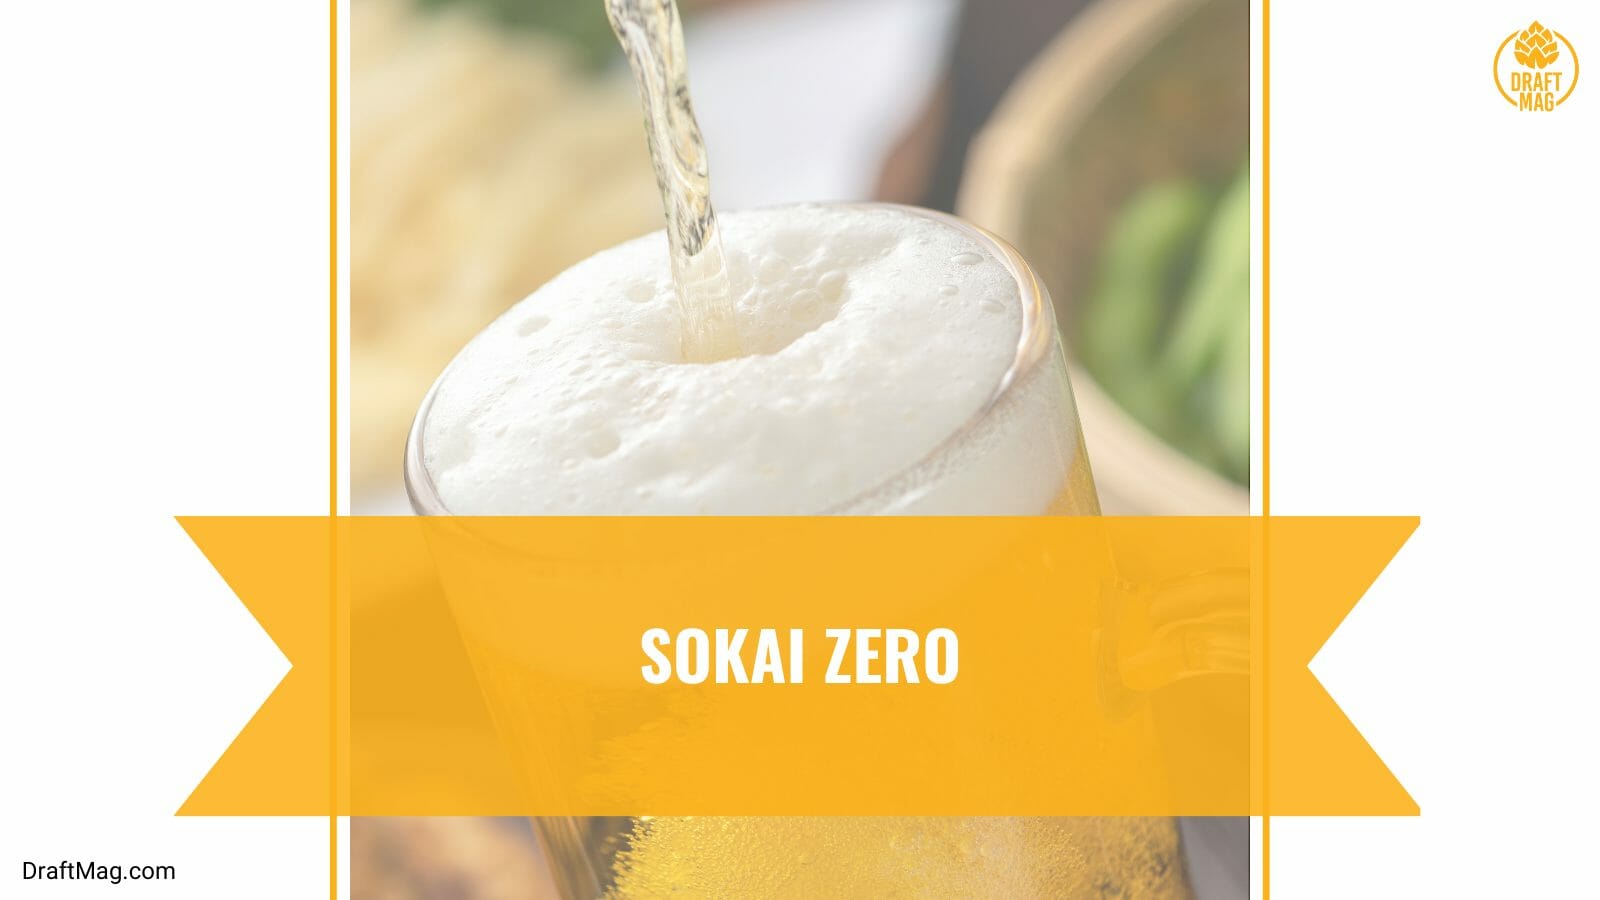 Sokai zero sapporo beer